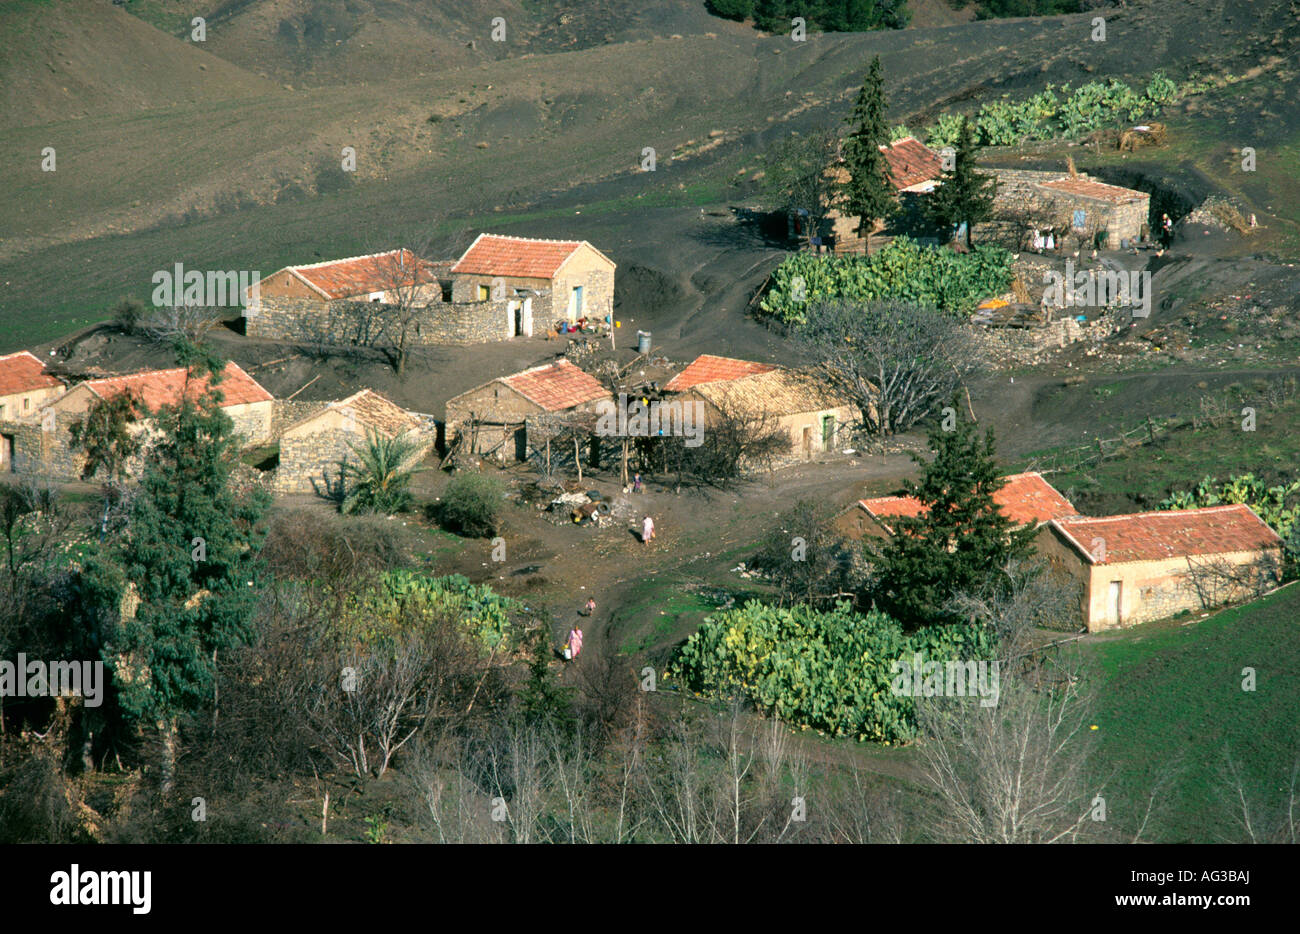 Algeria Djemila Rooftop of farmhouses Stock Photo